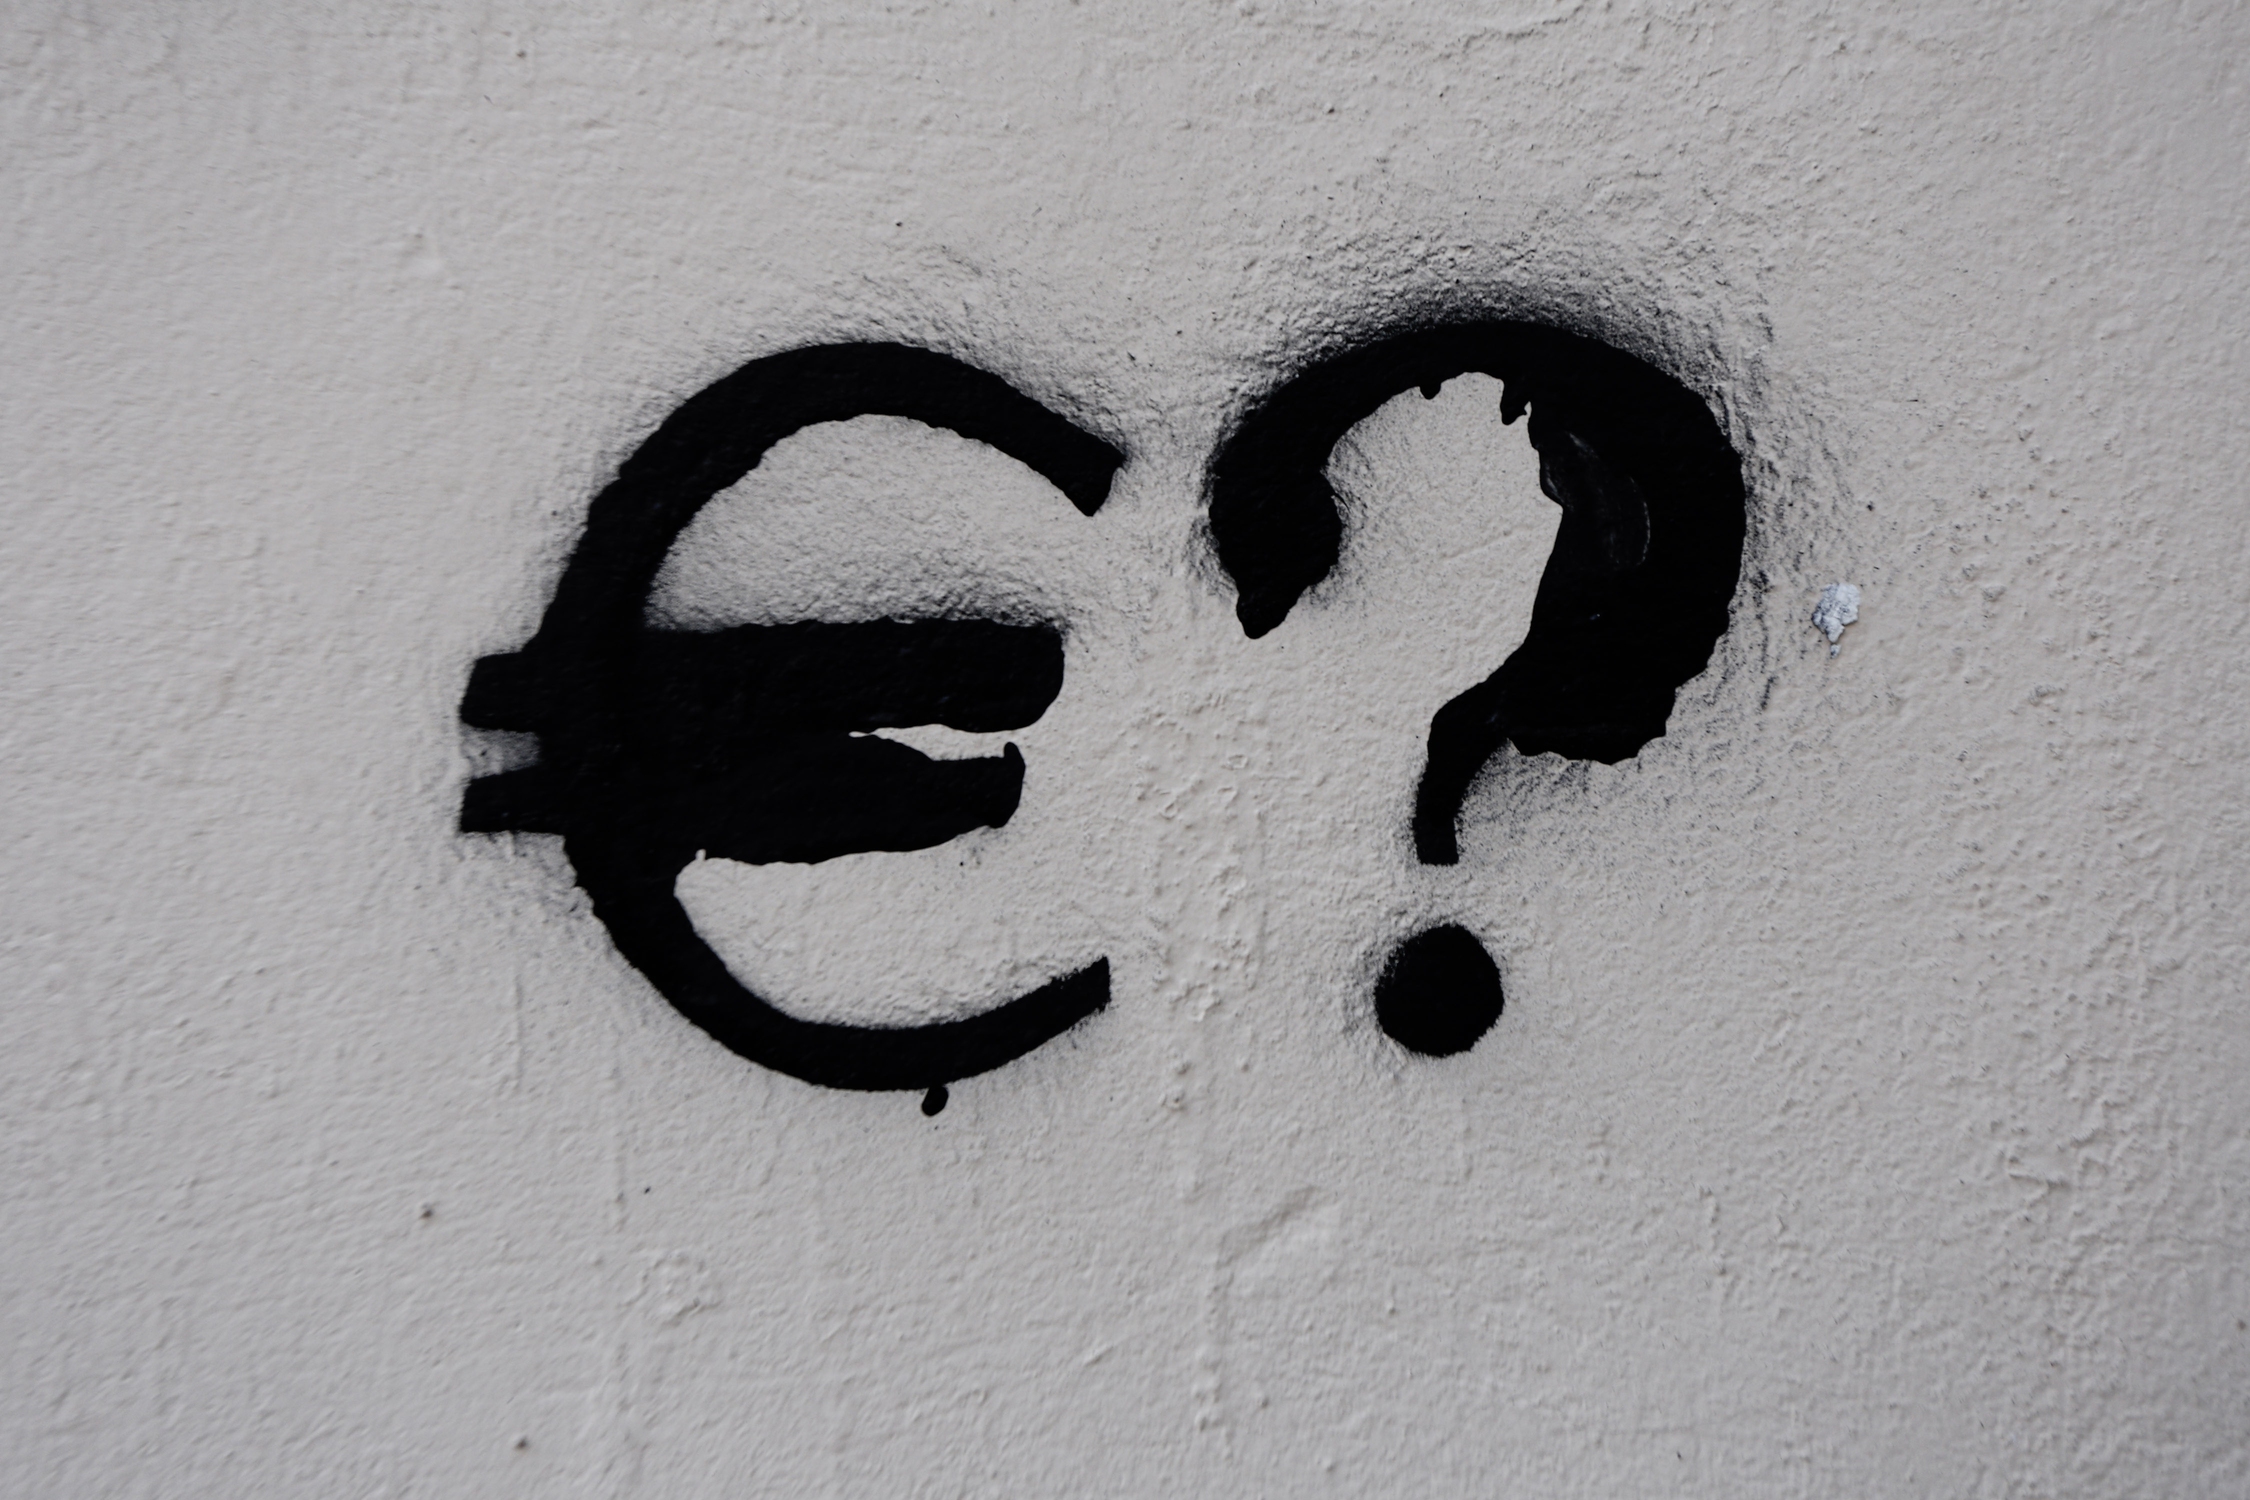 Χρέος και εκλογές 2023: Το μήνυμα της κάλπης θα κρίνει το πρωτάθλημα της ελληνικής οικονομίας